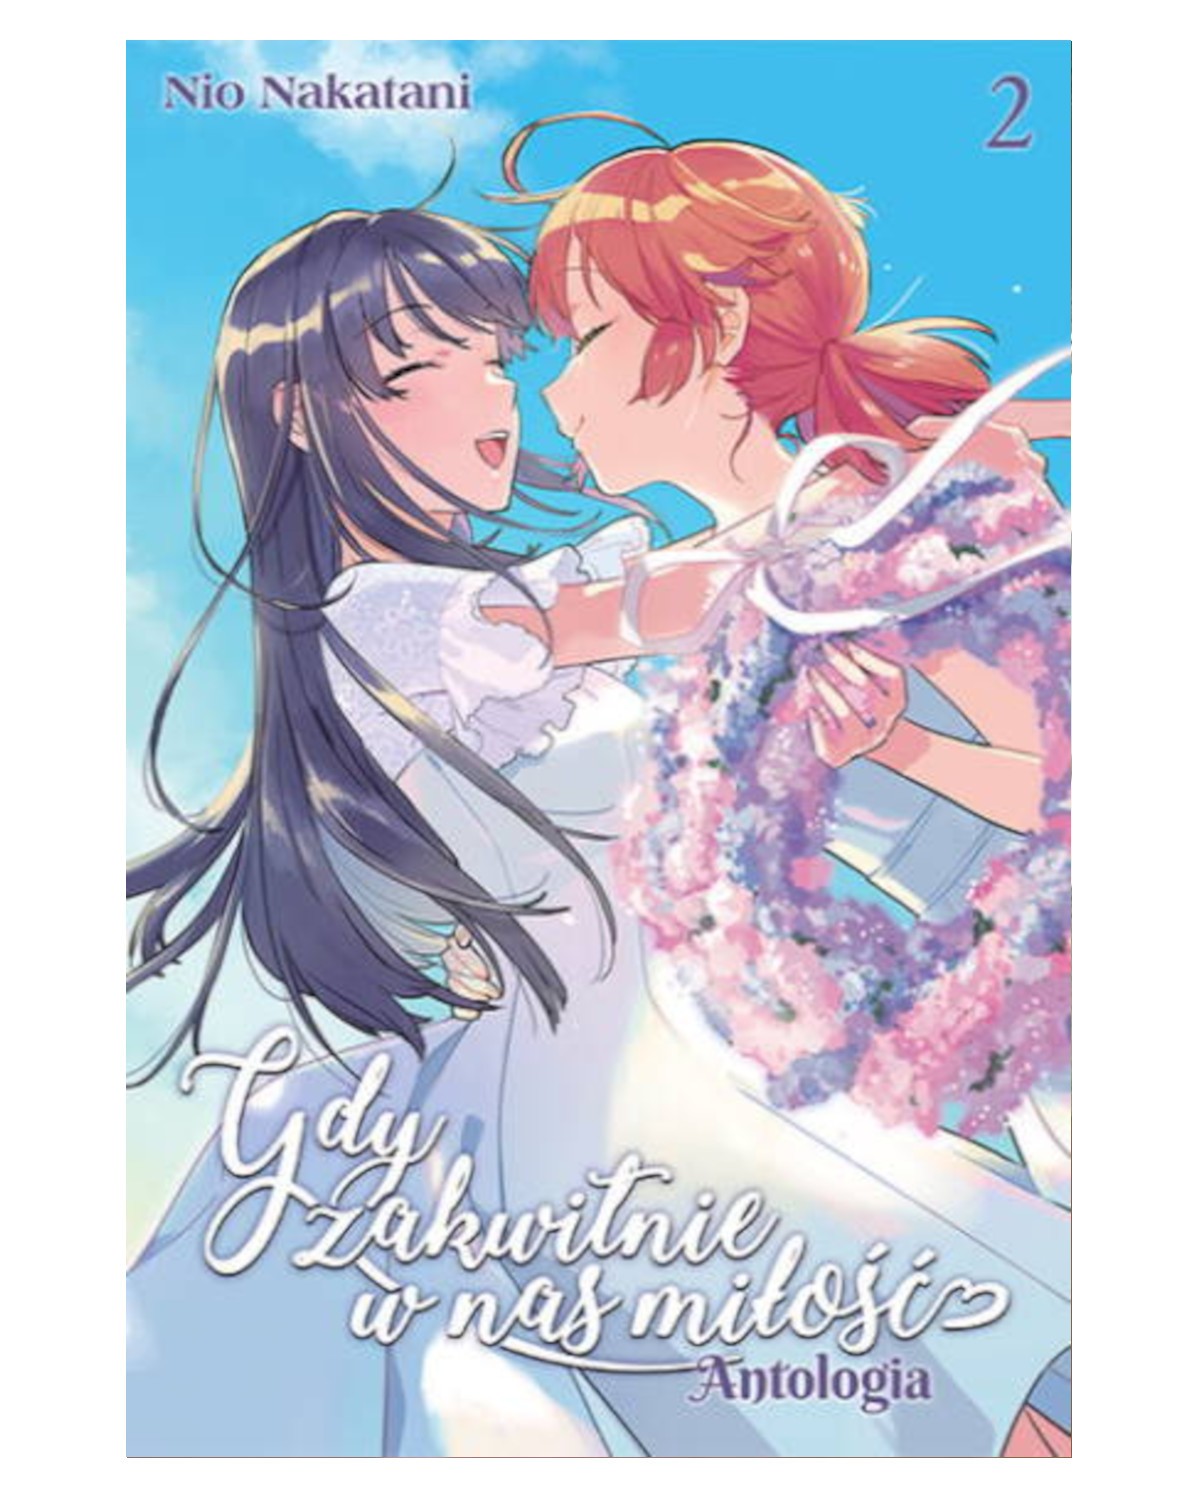 Sklep Anime Manga - Gdy Zakwitnie w Nas Miłość. Antologia - tom 2